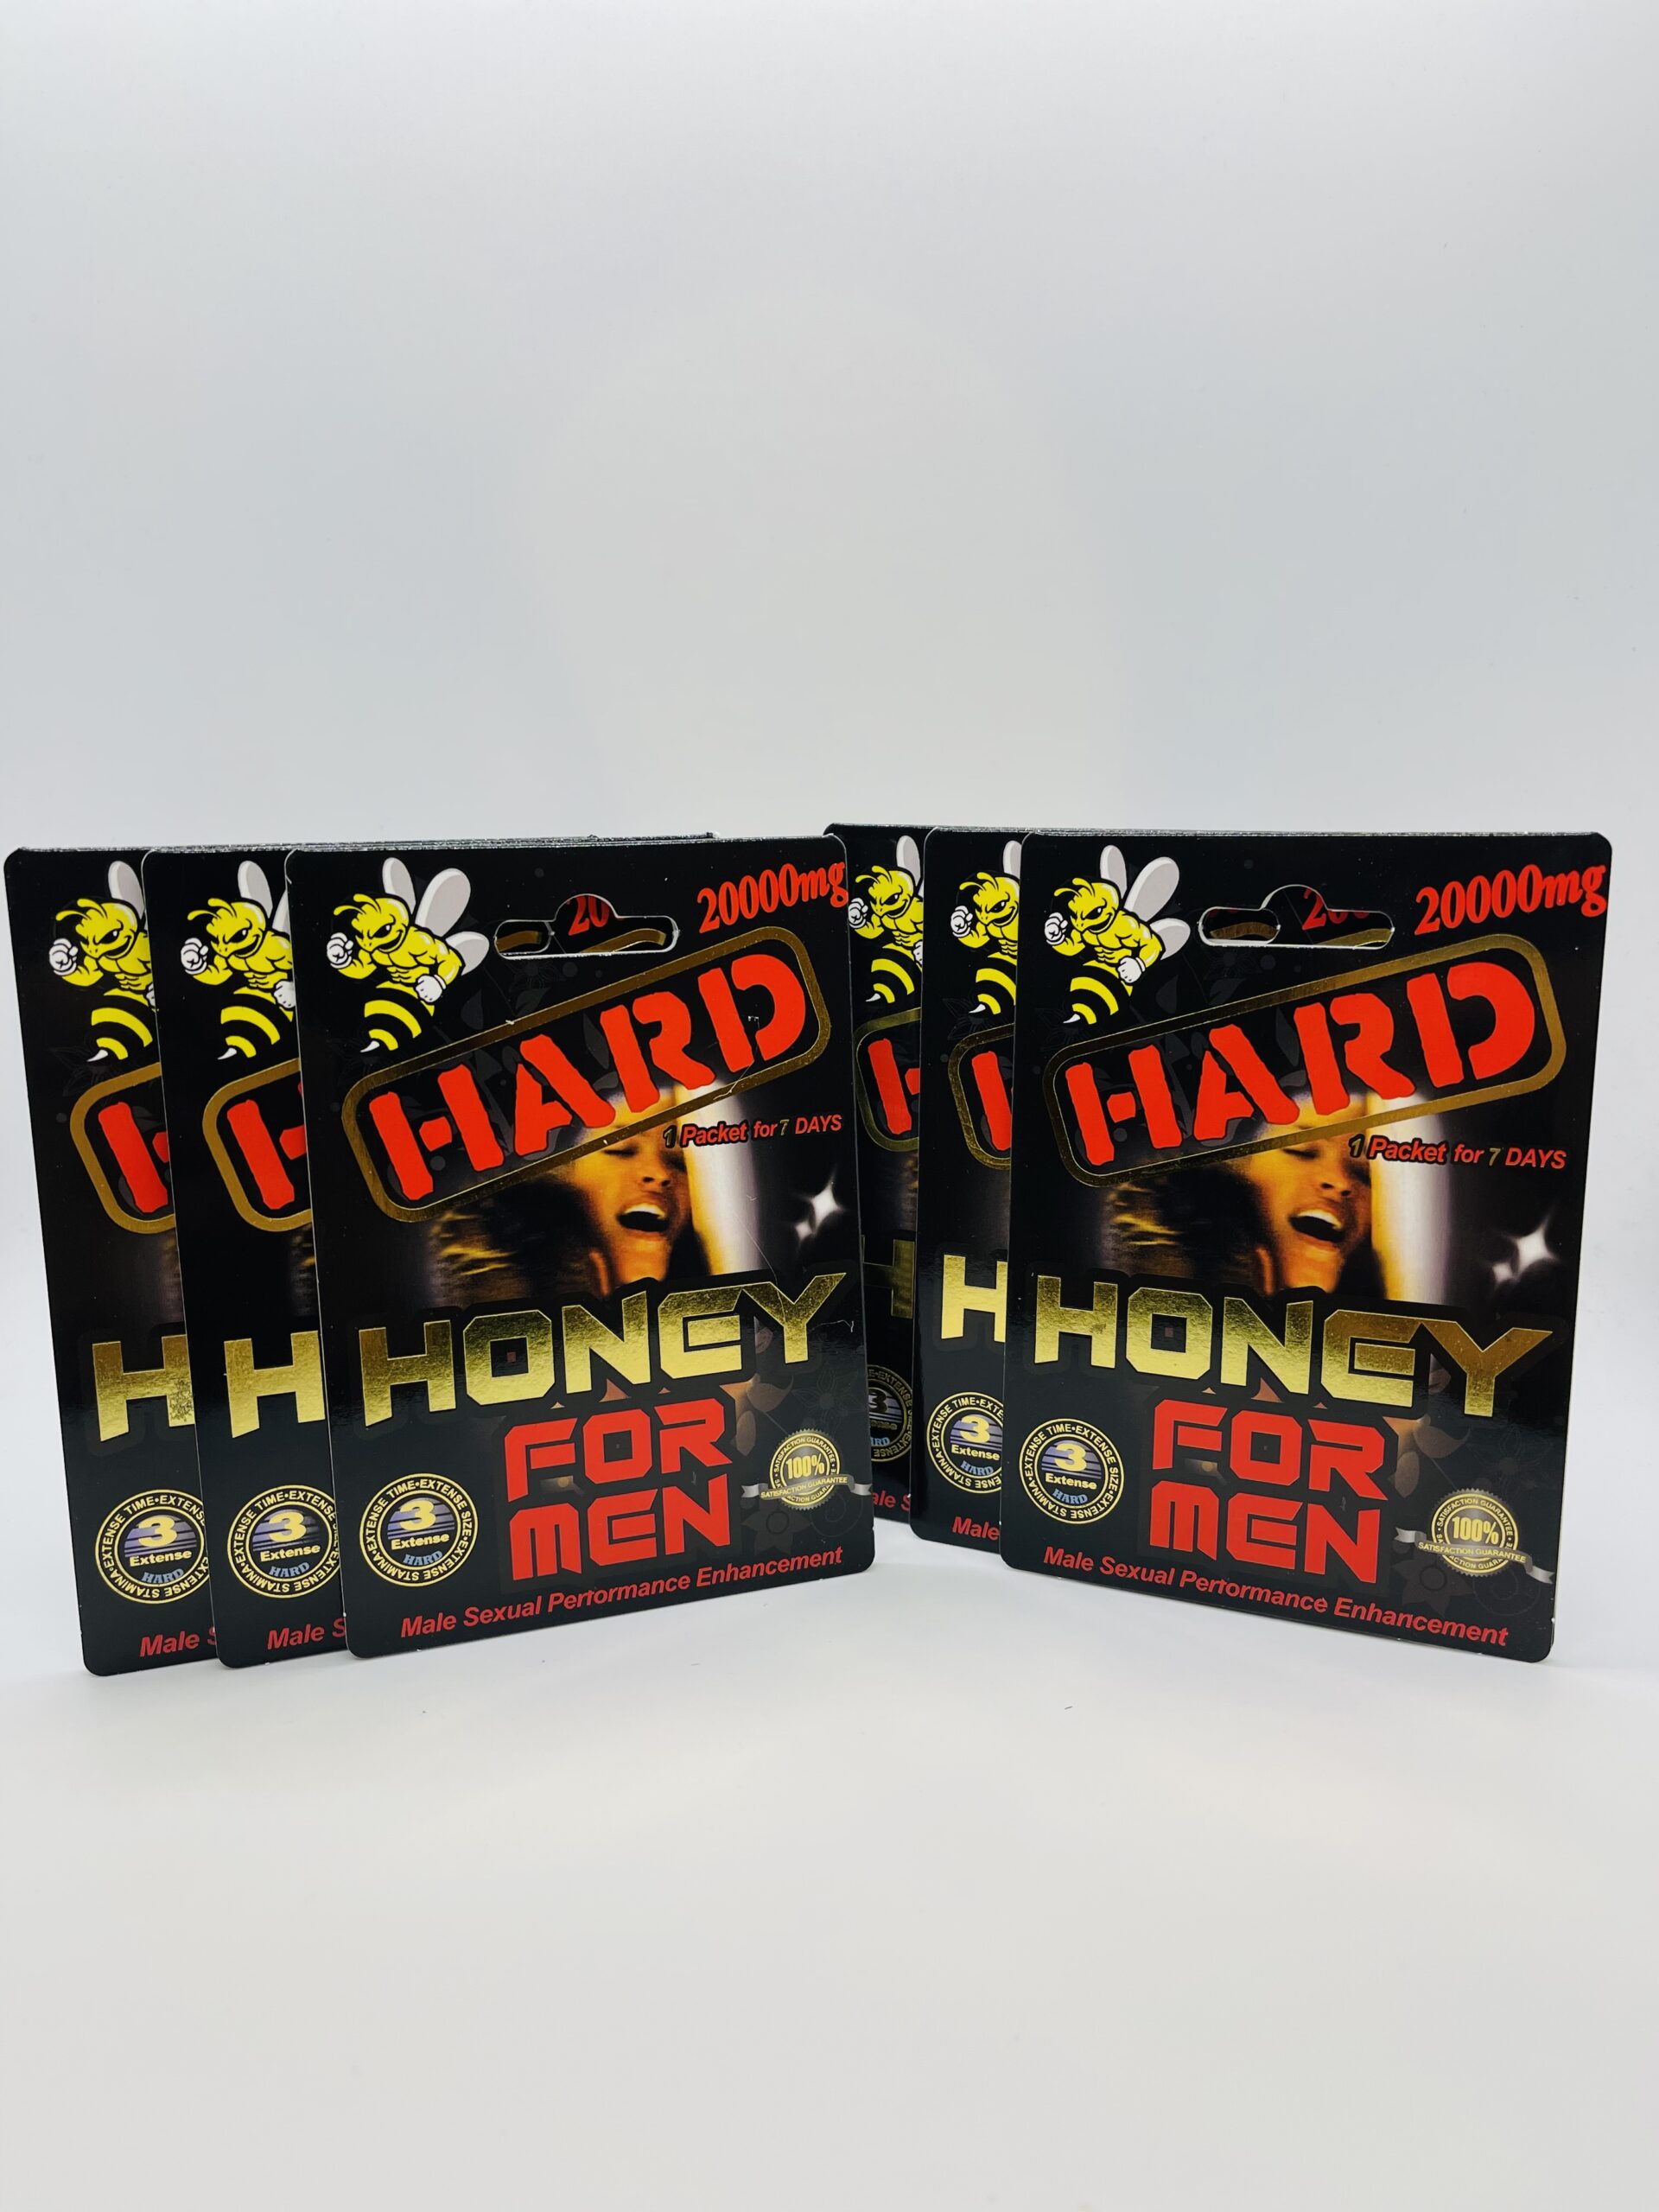 HARD Honey For Men 20000